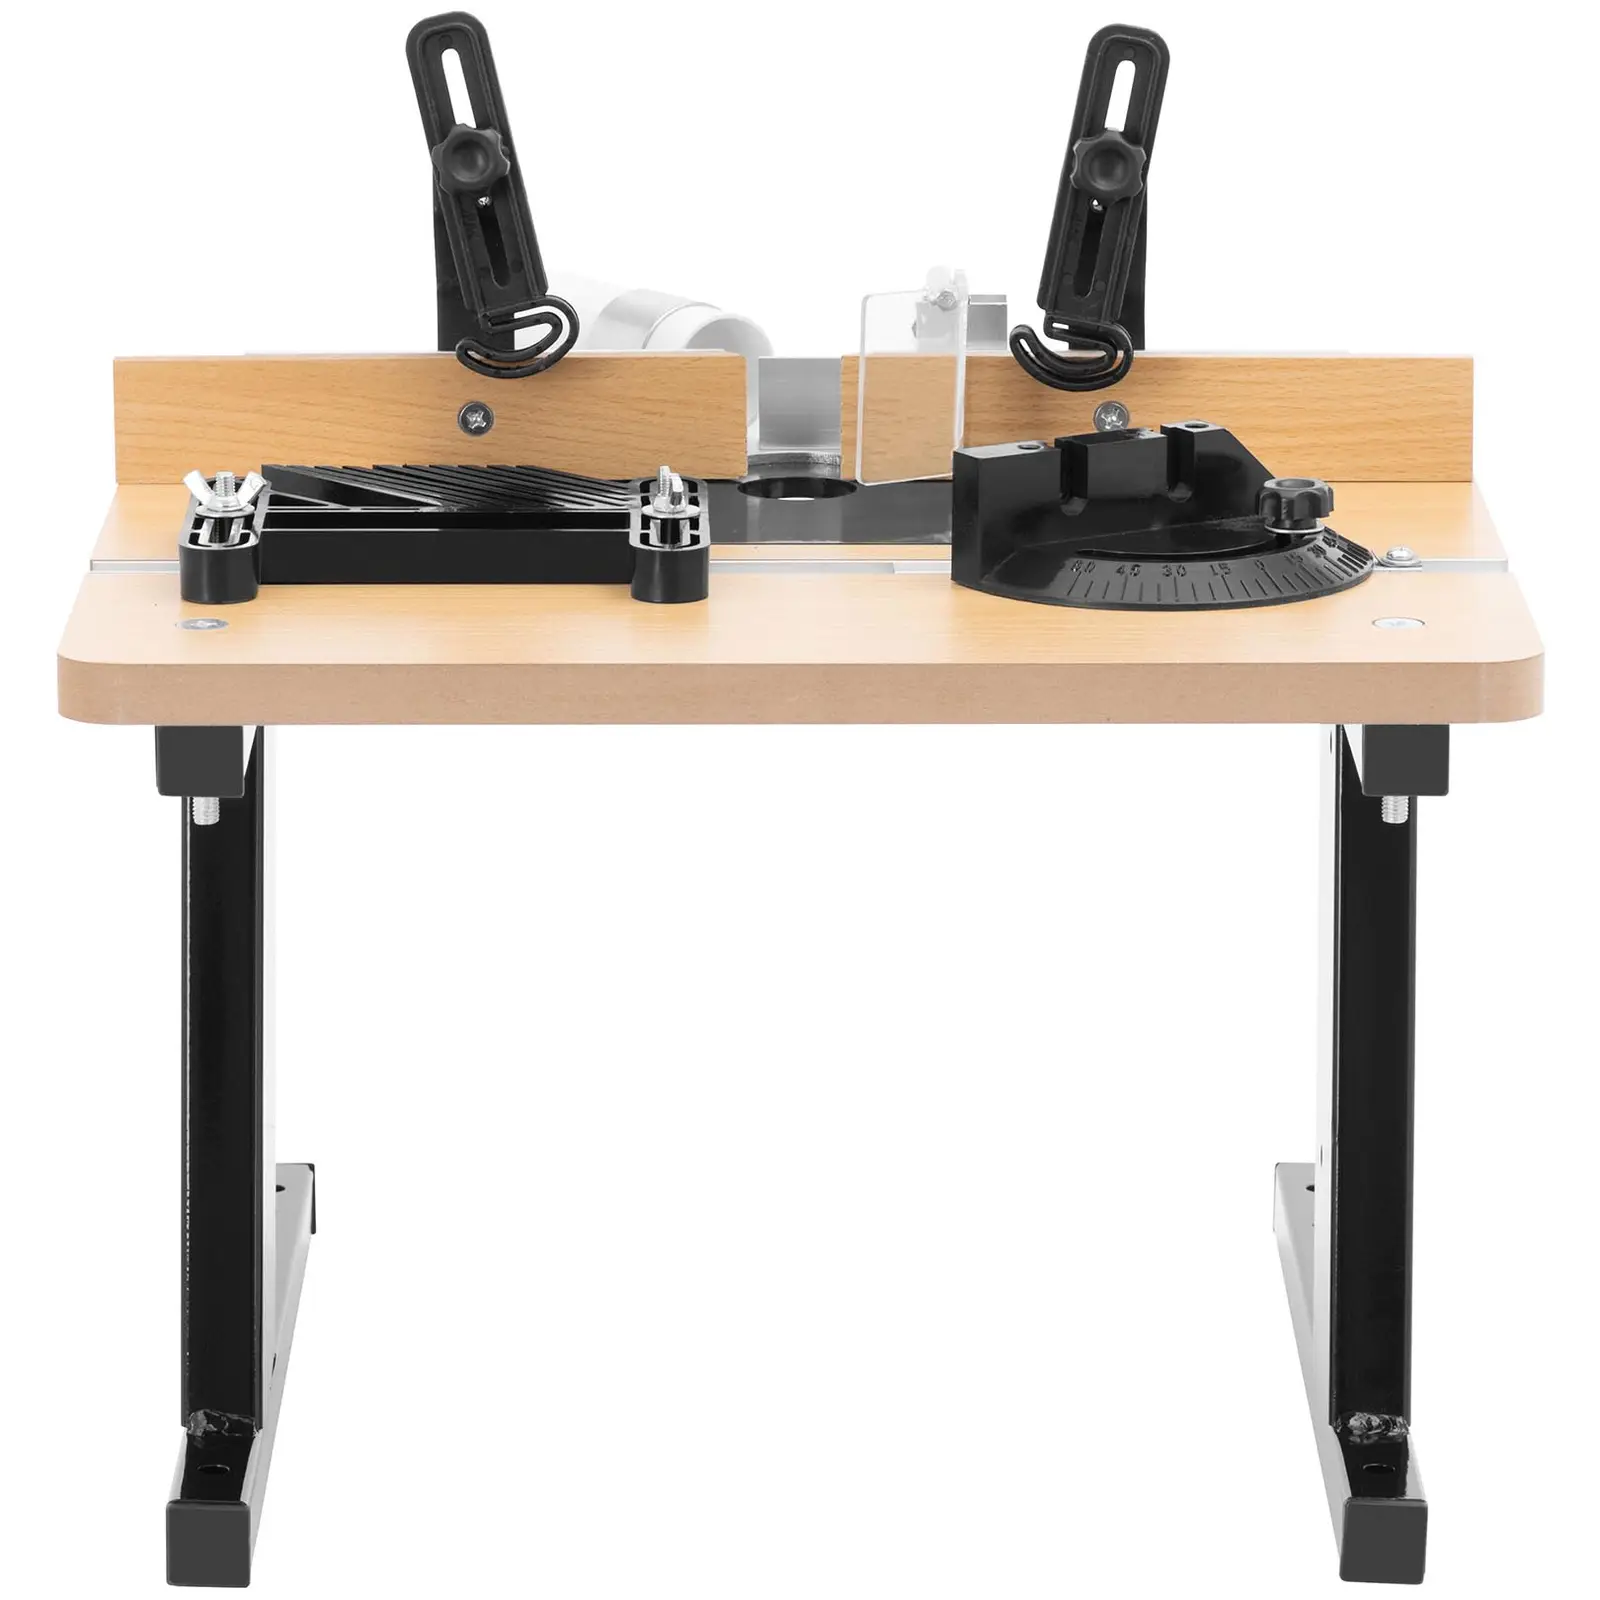 Frezavimo stalas - 430 x 400 mm - su. Kreipiančioji sistema, slėgio įtaisas ir įsiurbimo jungtis